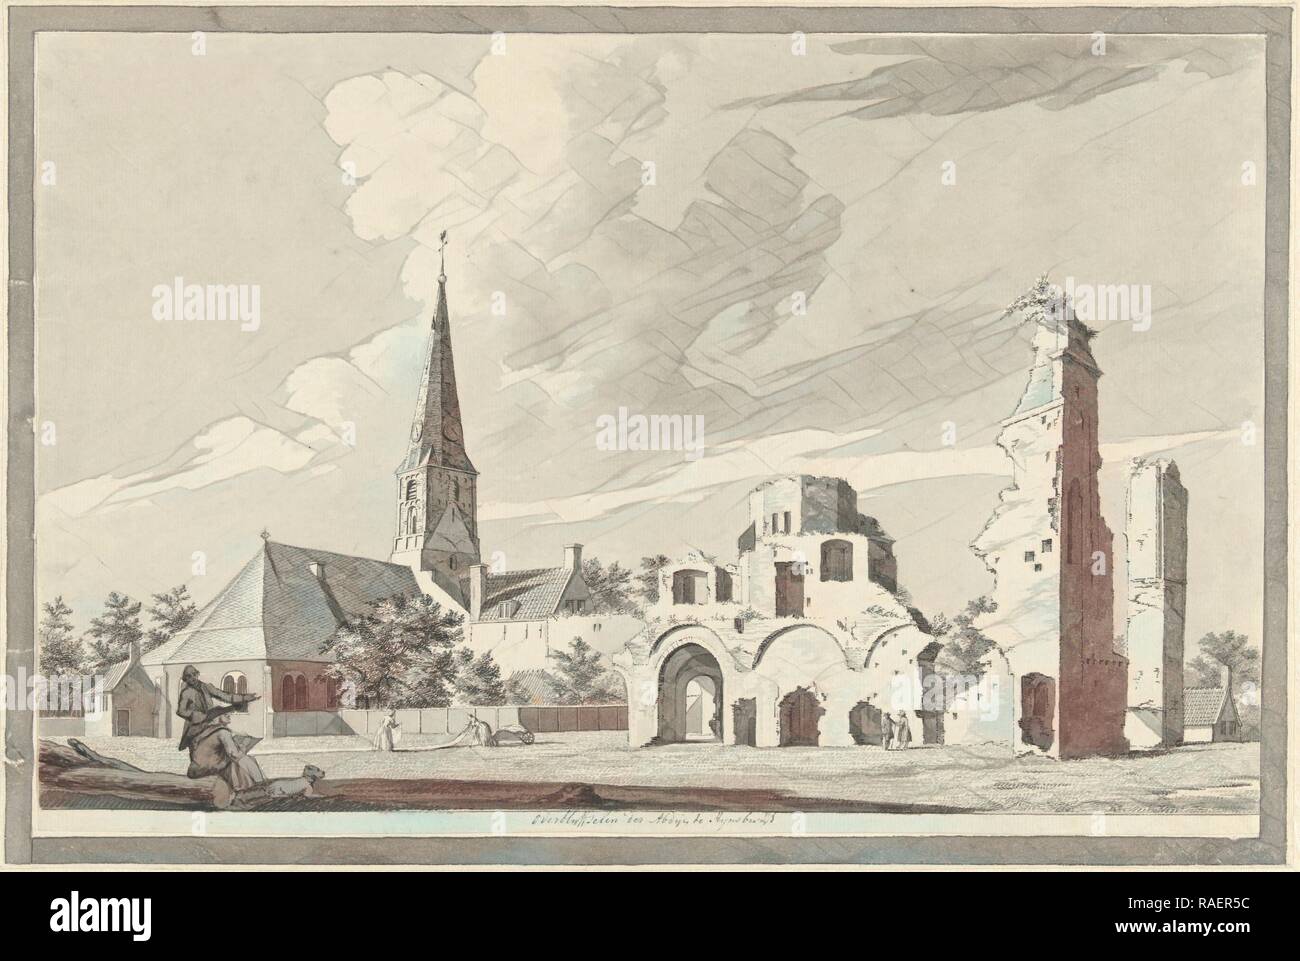 Les ruines de l'abbaye de Rijnsburg Pays-bas, Gerrit Toorenburgh, 1742 - 178. Repensé par Gibon. L'art classique repensé Banque D'Images